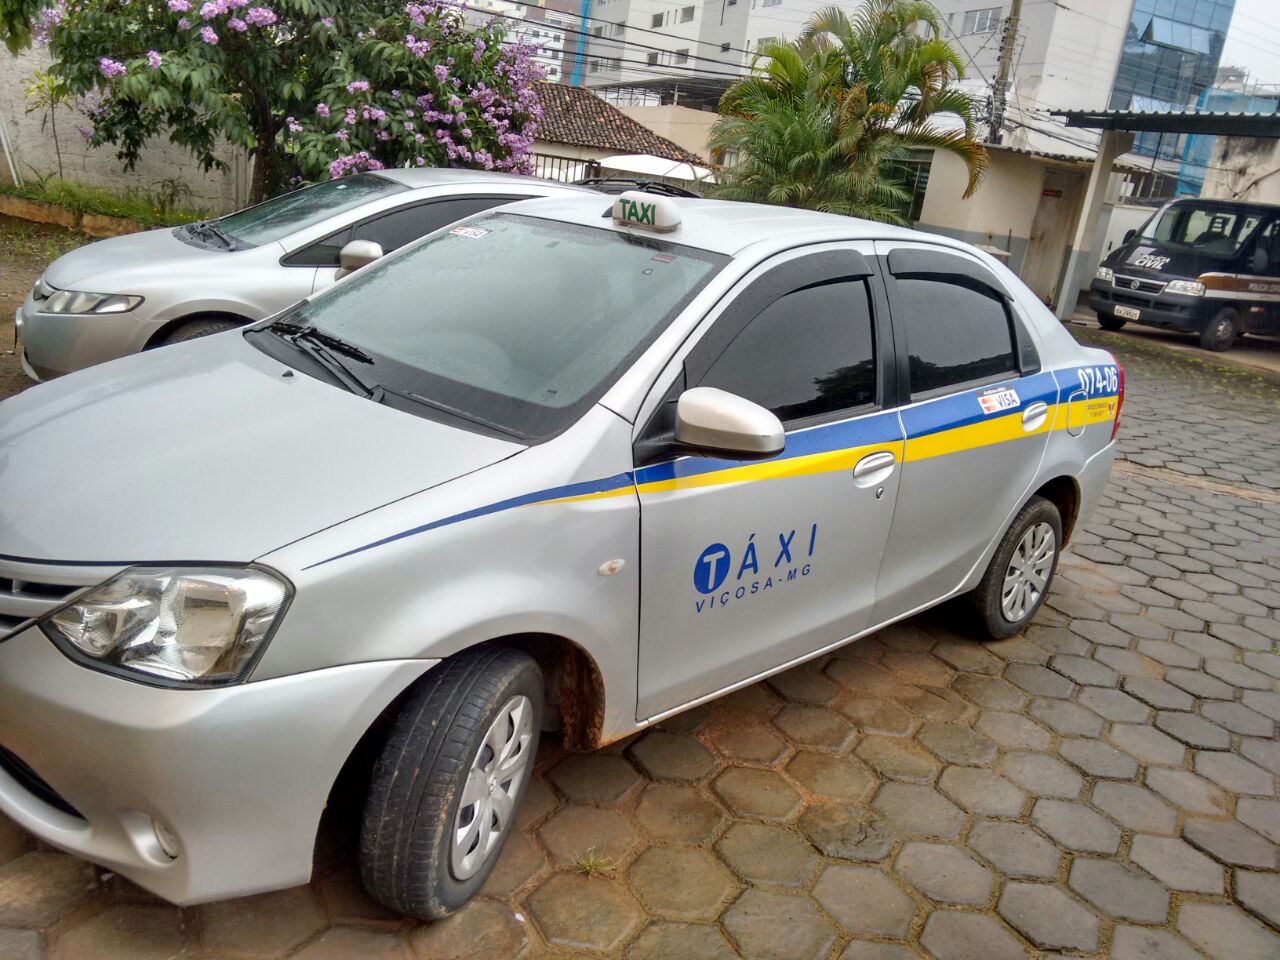 Táxi roubado em Viçosa é encontrado incendiado em São Geraldo